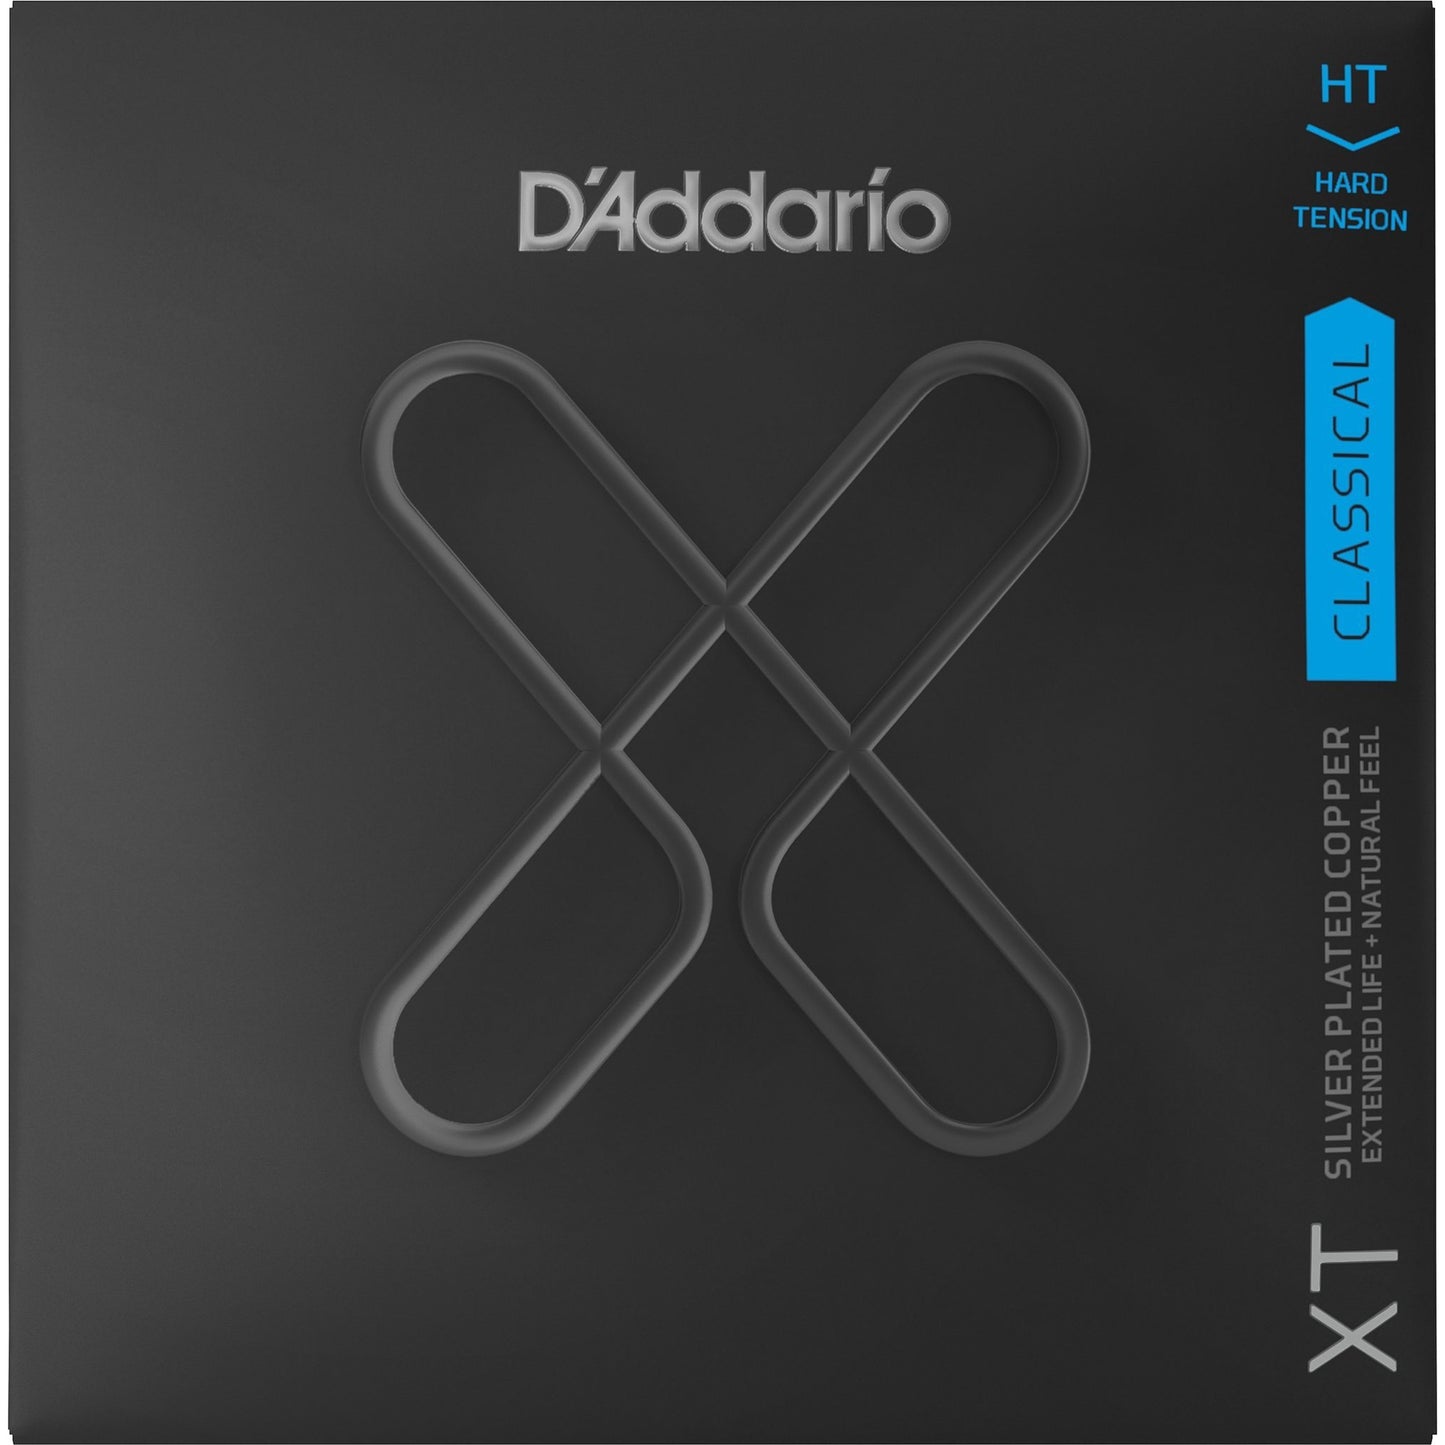 D'Addario XTC XT Classical Guitar Strings, Hard Tension